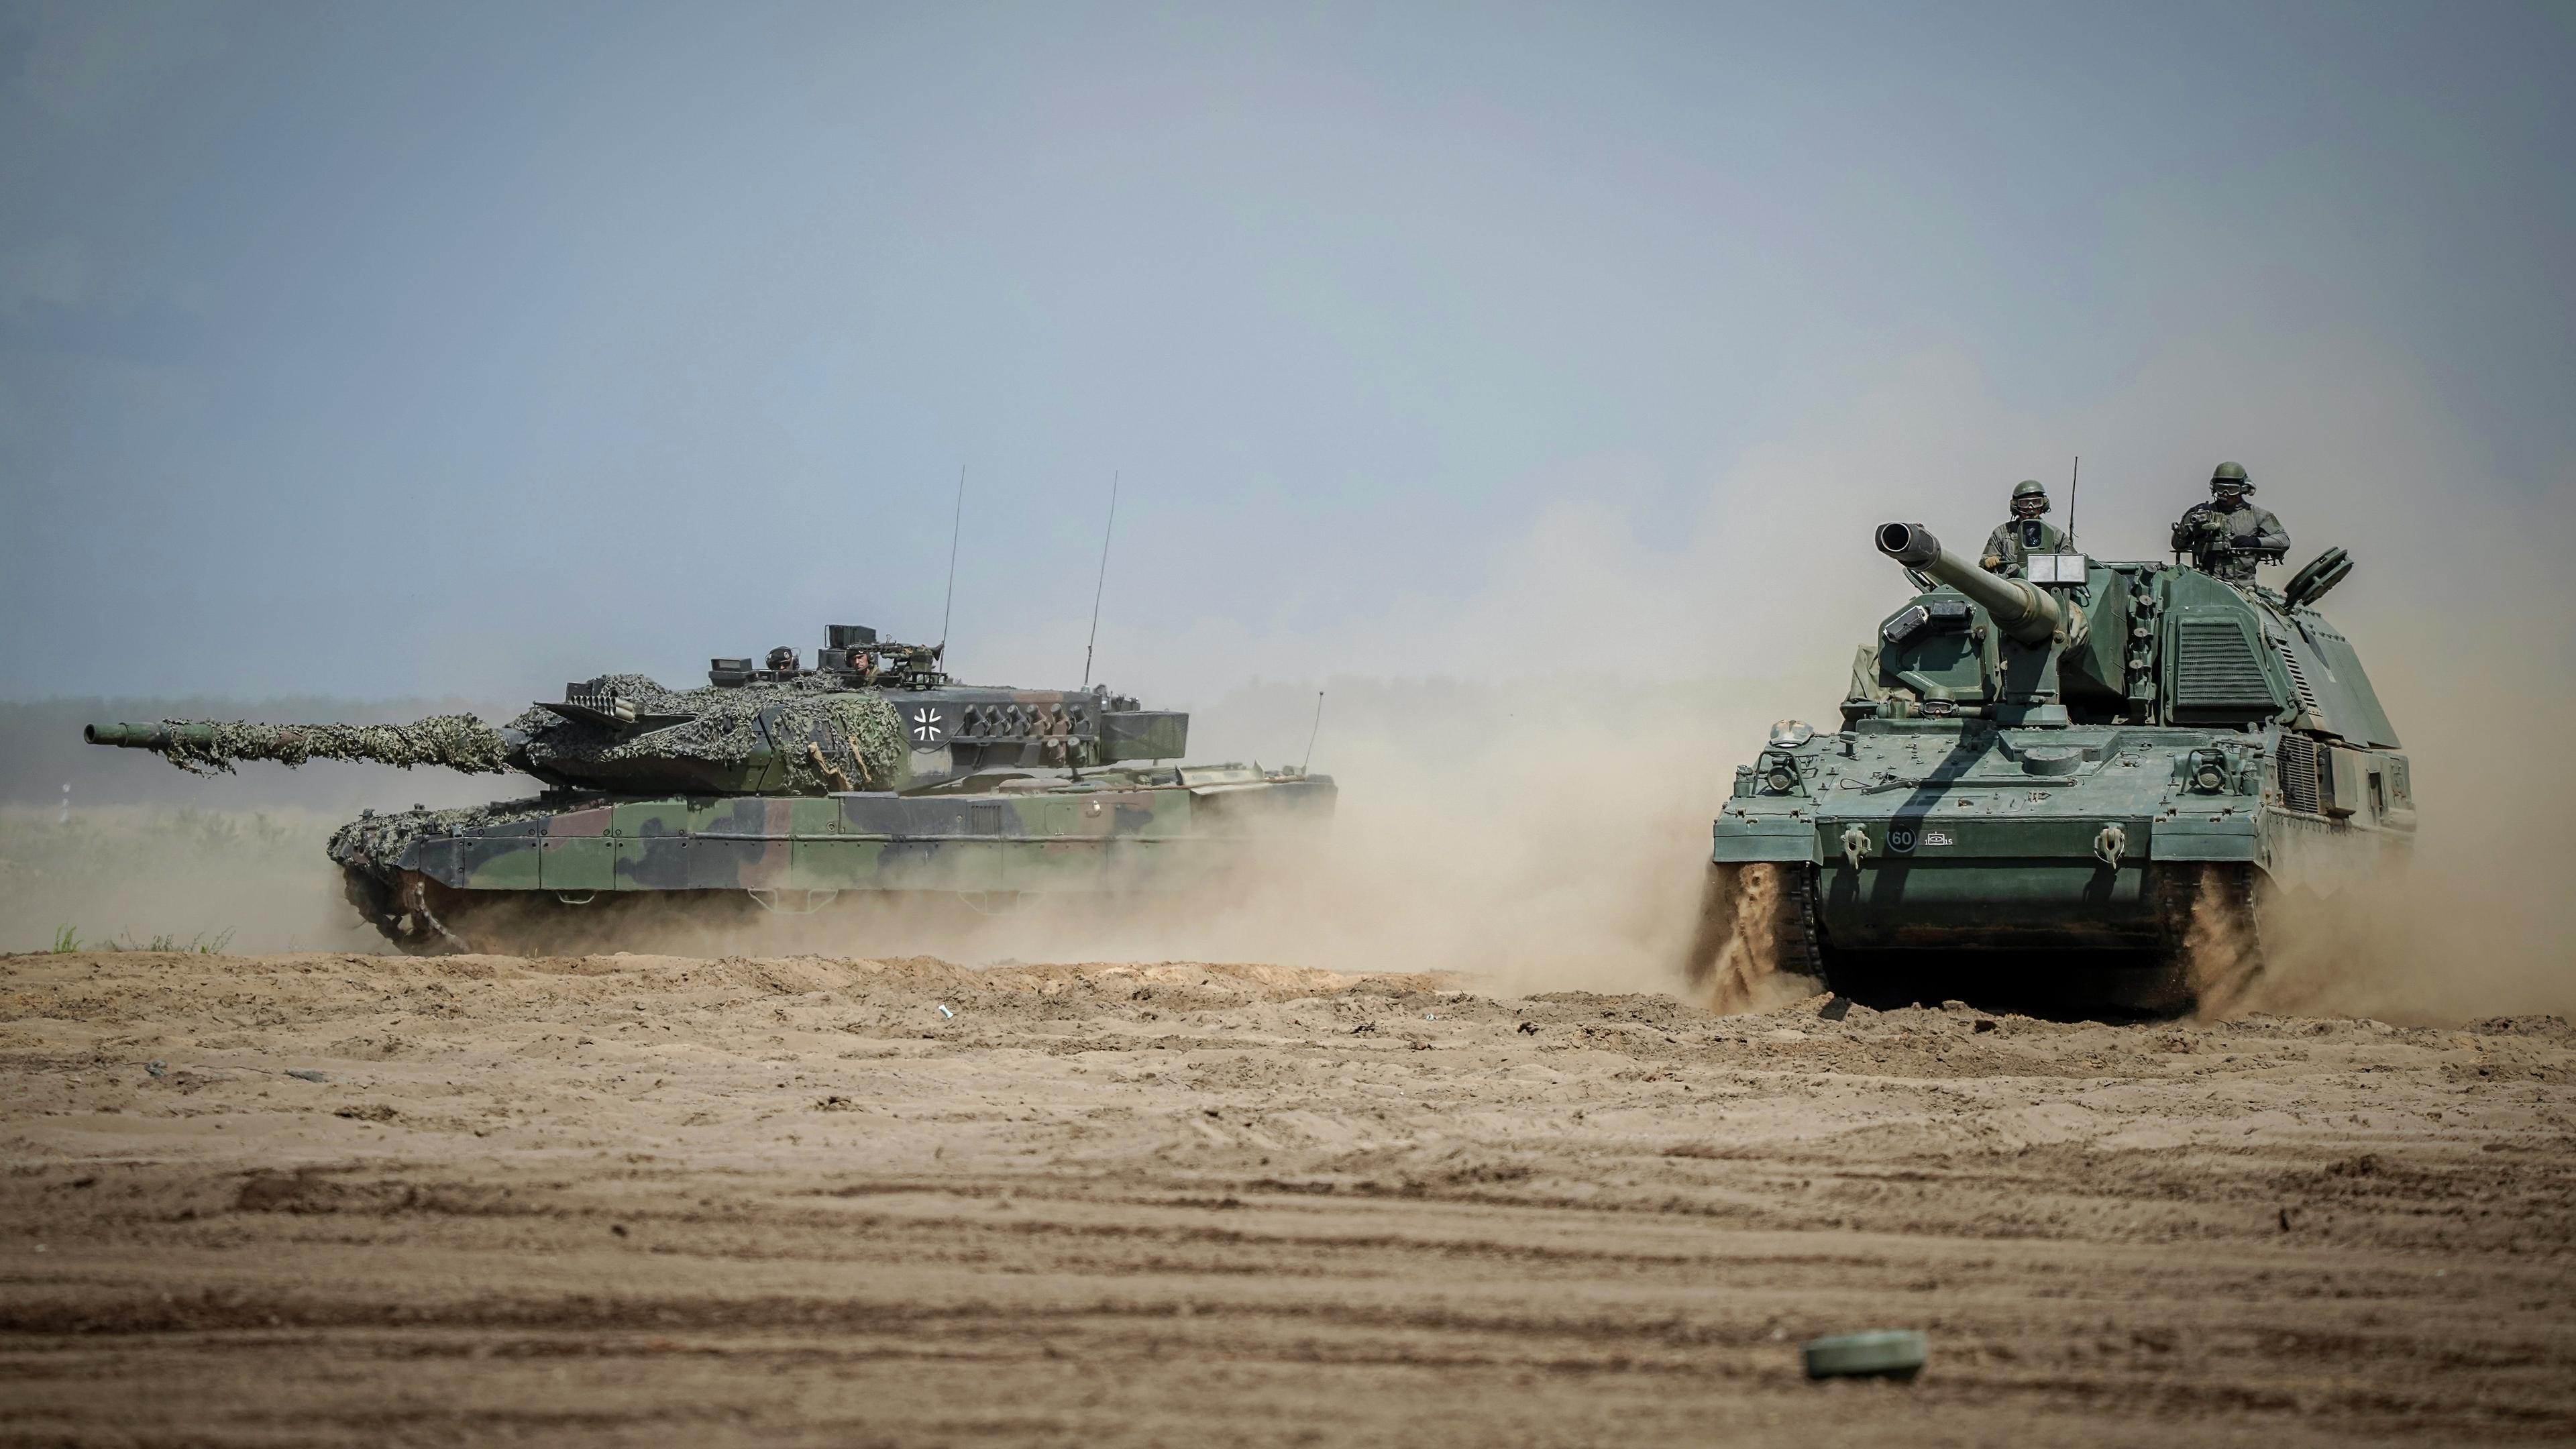 Litauen, Vilnius: Eine Panzerhaubitze 2000 und ein Leopard 2 Kampfpanzer sind bei der Nato-Übung "Griffin Storm", bei der etwa 1000 Bundeswehrsoldaten zusammen mit der litauischen Armee die Verteidigung der Nato-Ostflanke trainieren, im Einsatz. 